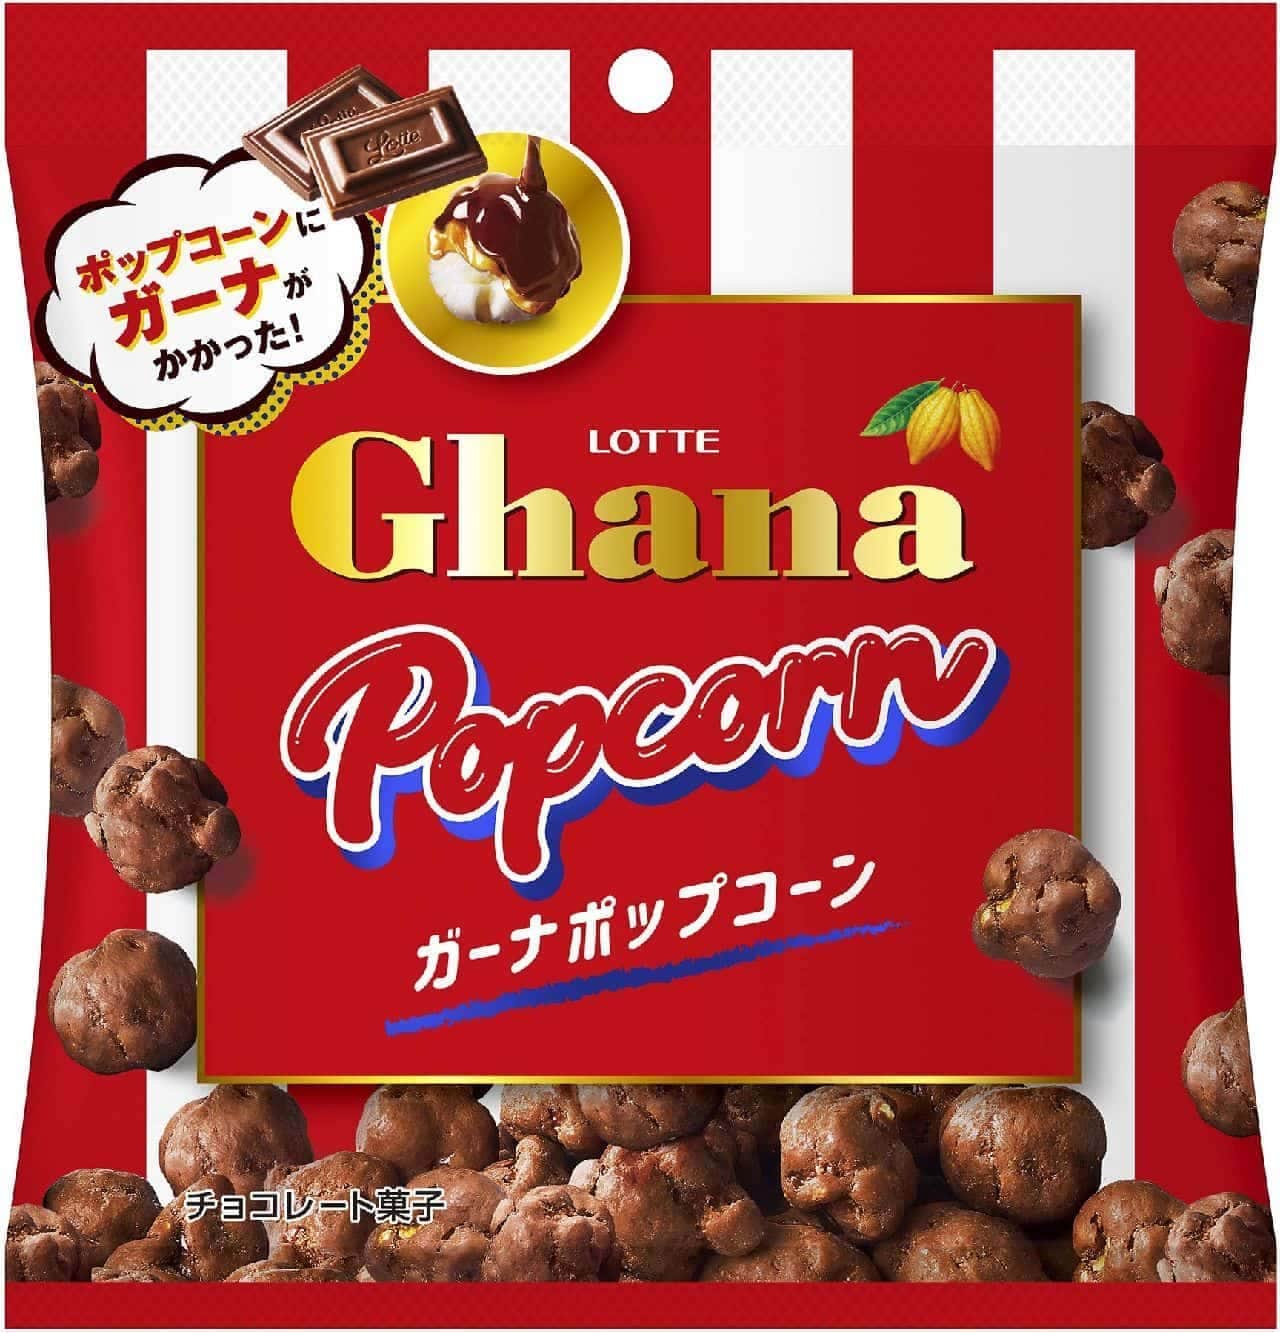 Lotte "Ghana Popcorn"